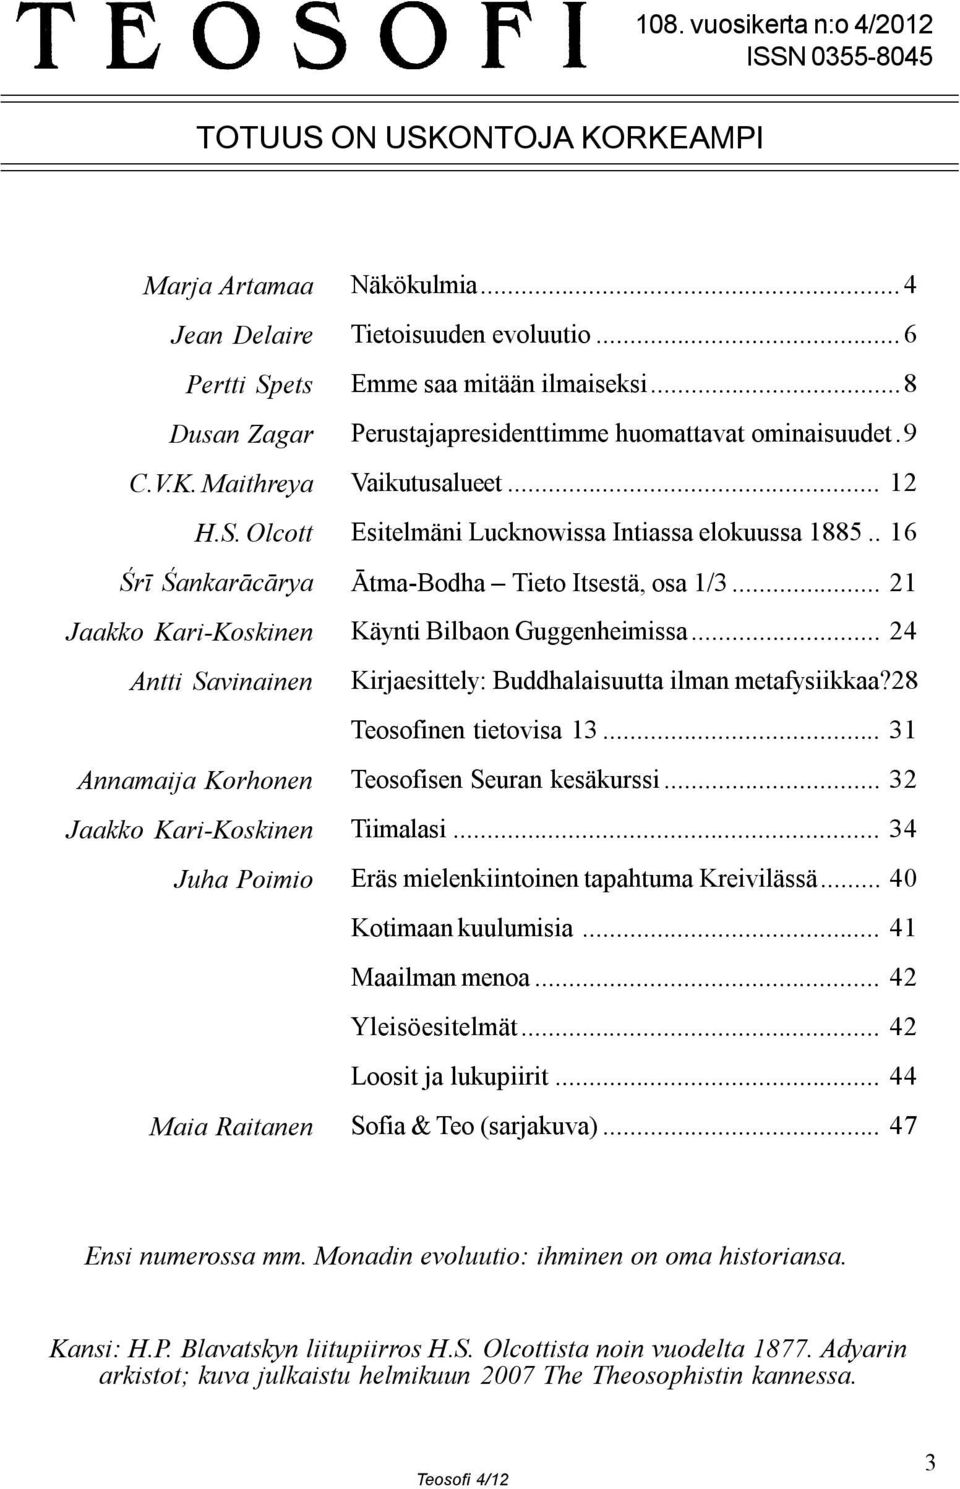 . 16 Ātma-Bodha Tieto Itsestä, osa 1/3... 21 Käynti Bilbaon Guggenheimissa... 24 Kirjaesittely: Buddhalaisuutta ilman metafysiikkaa?28 Teosofinen tietovisa 13... 31 Teosofisen Seuran kesäkurssi.